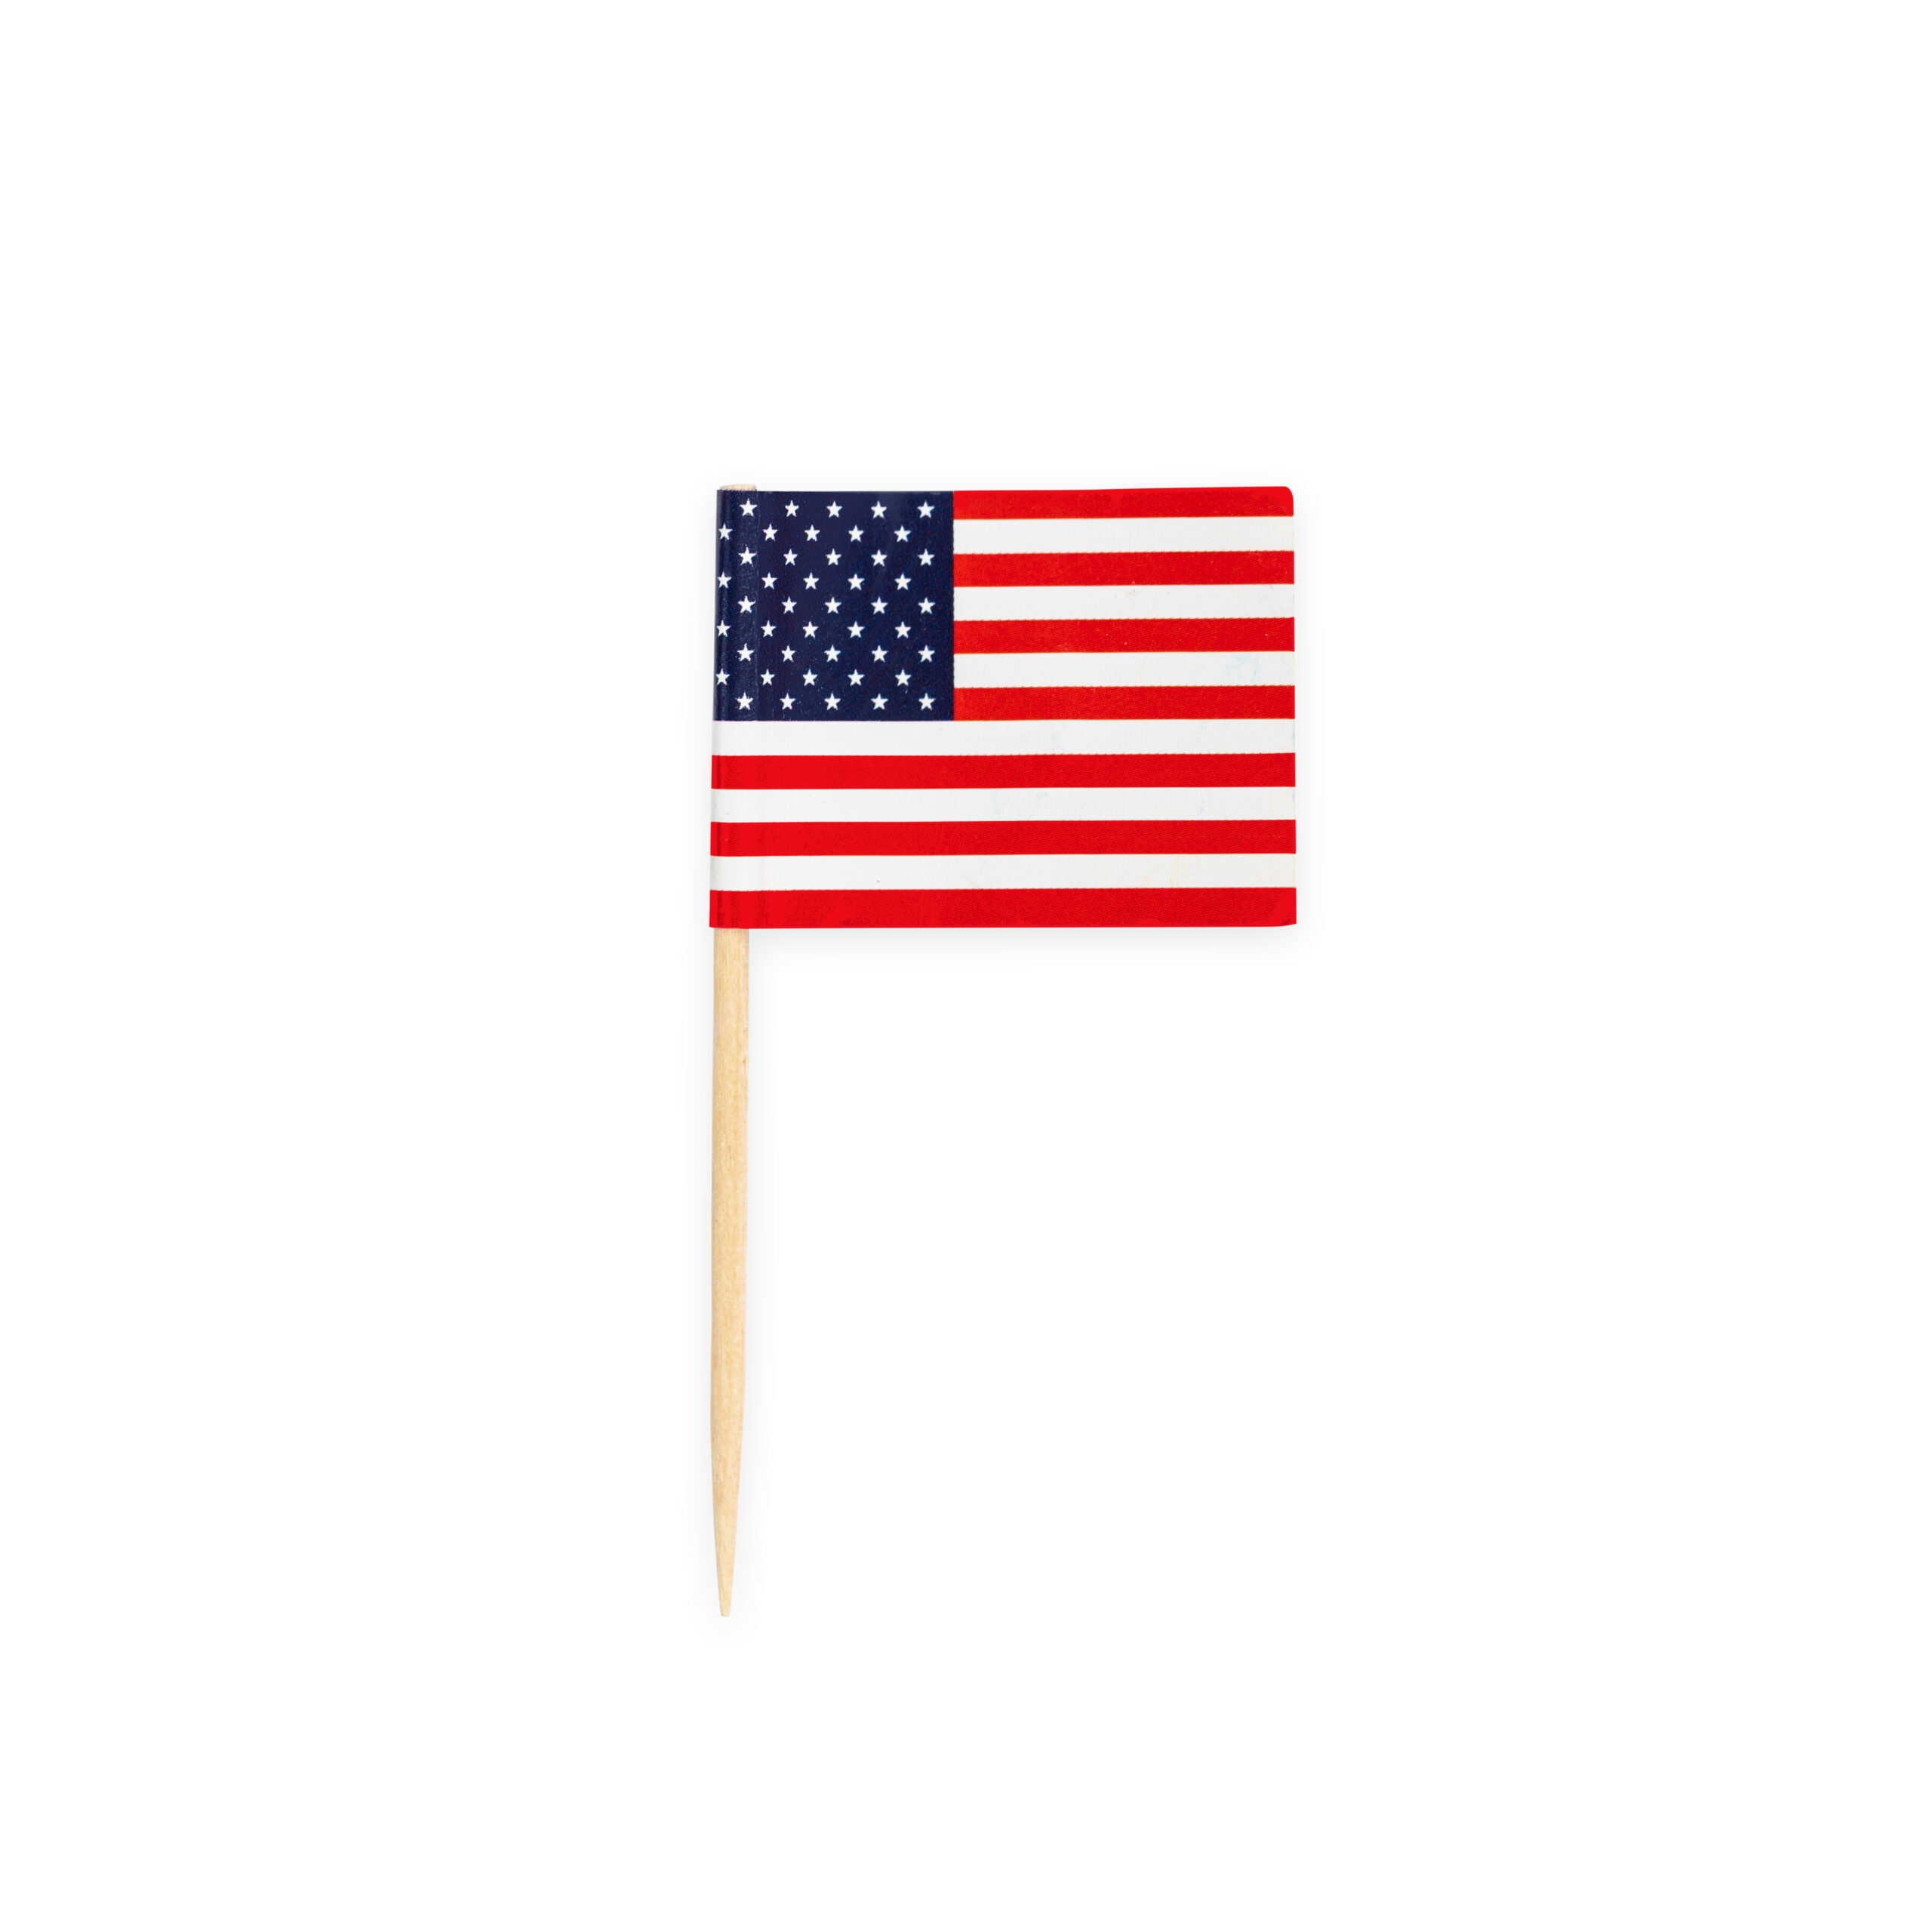 50st Prikkertjes Vlag Amerika